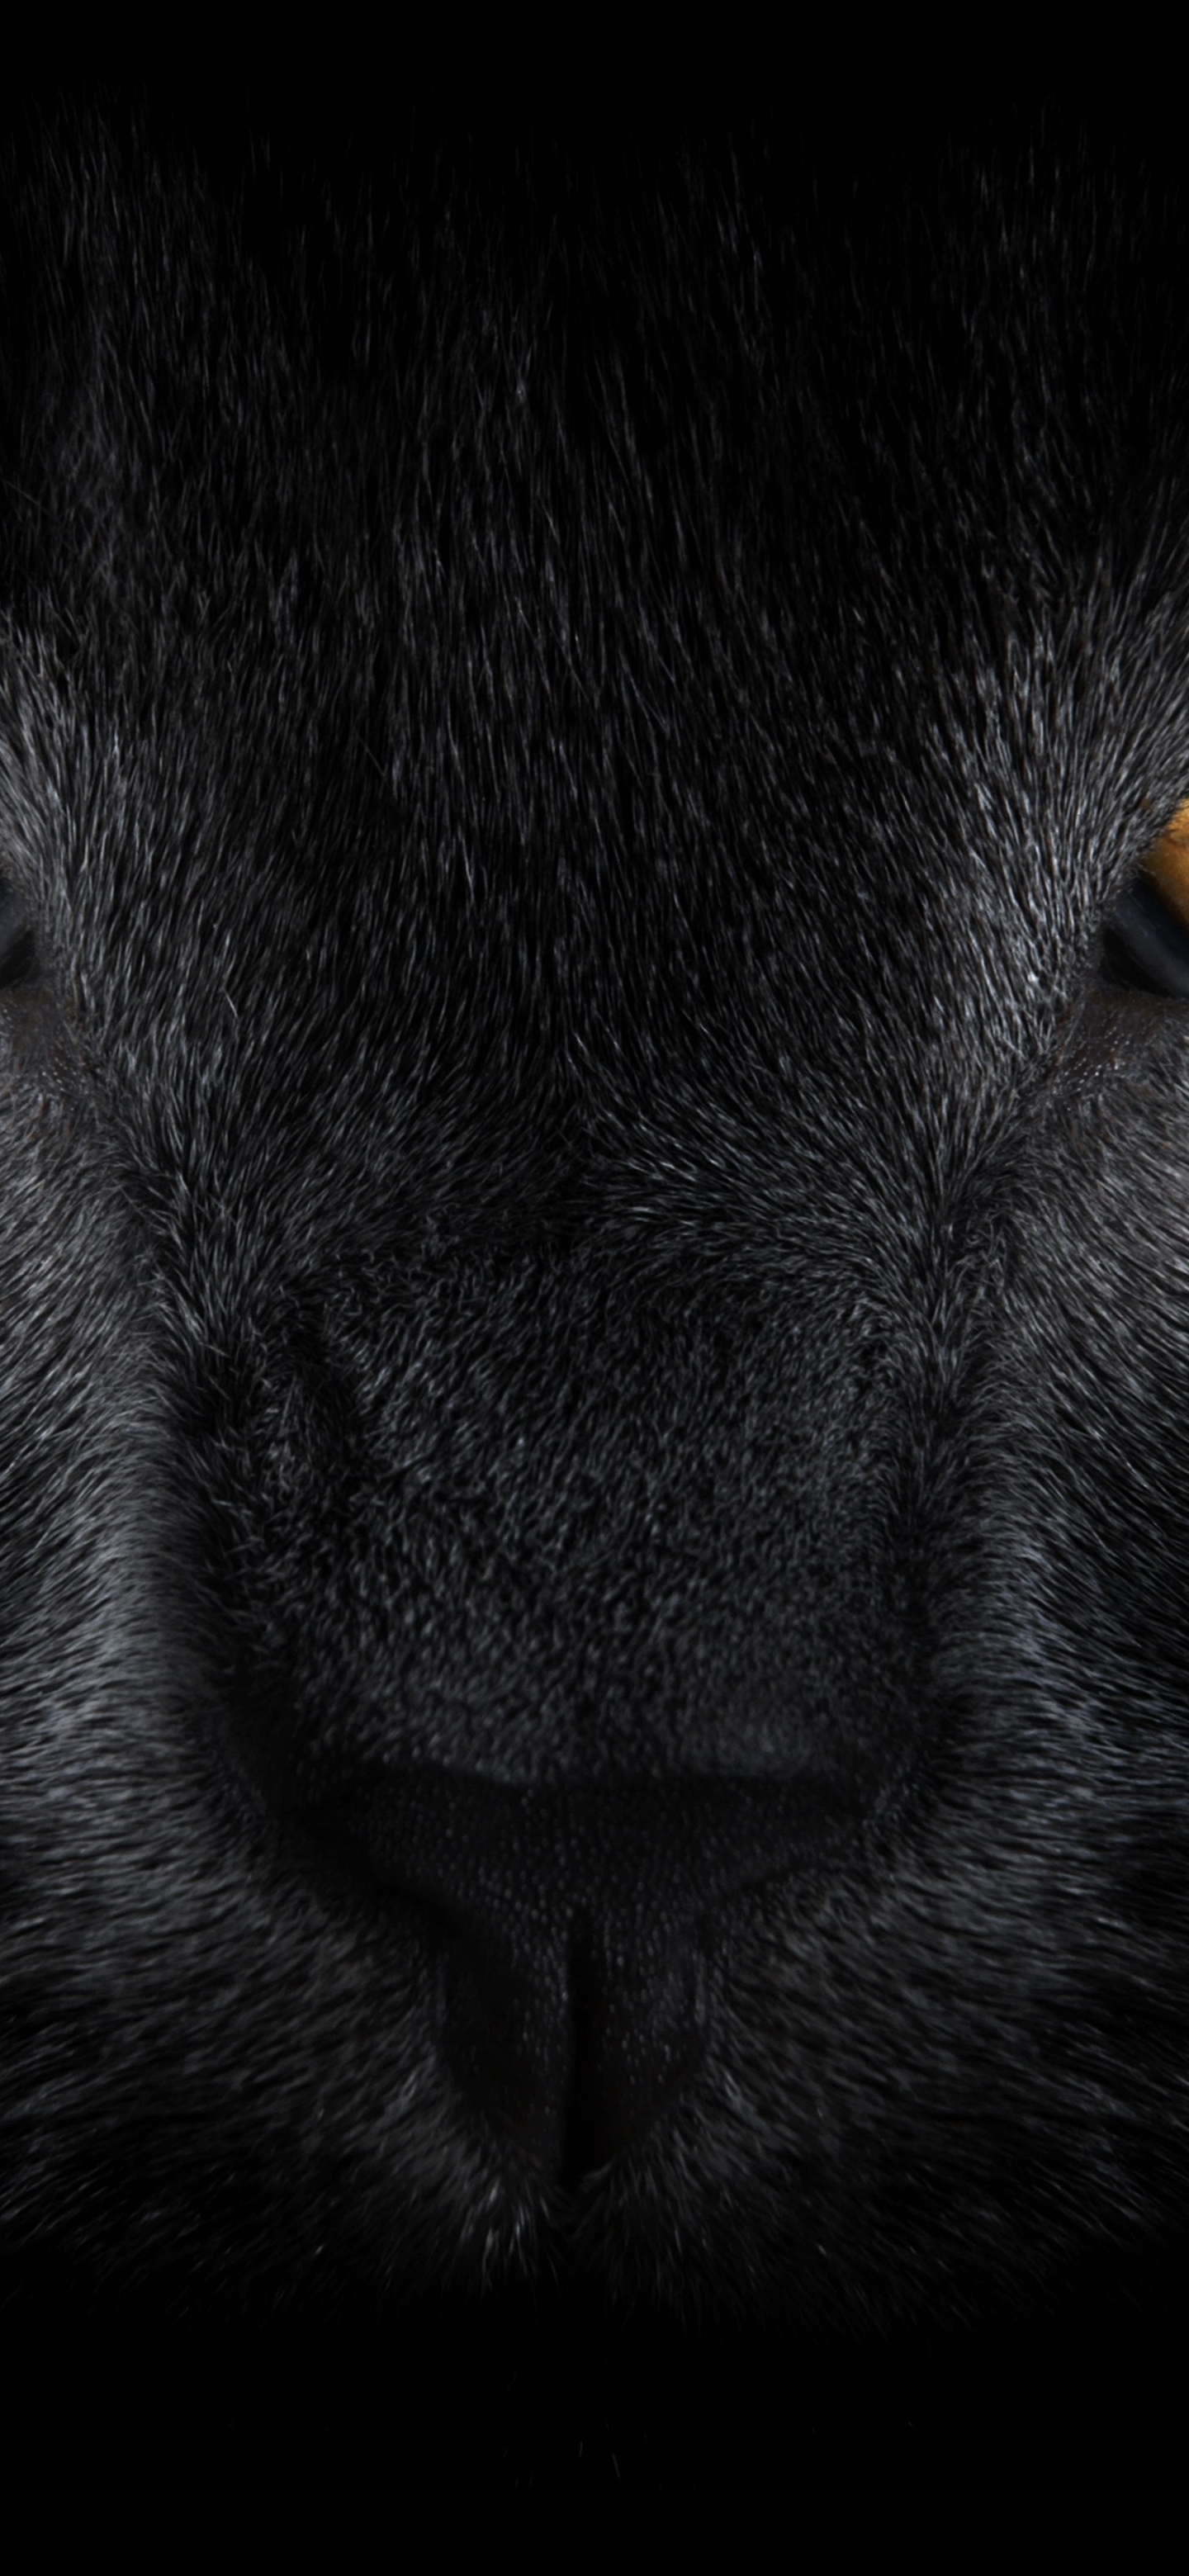 Картинка: Чёрная кошка, глаза, нос, шерсть, усы, взгляд